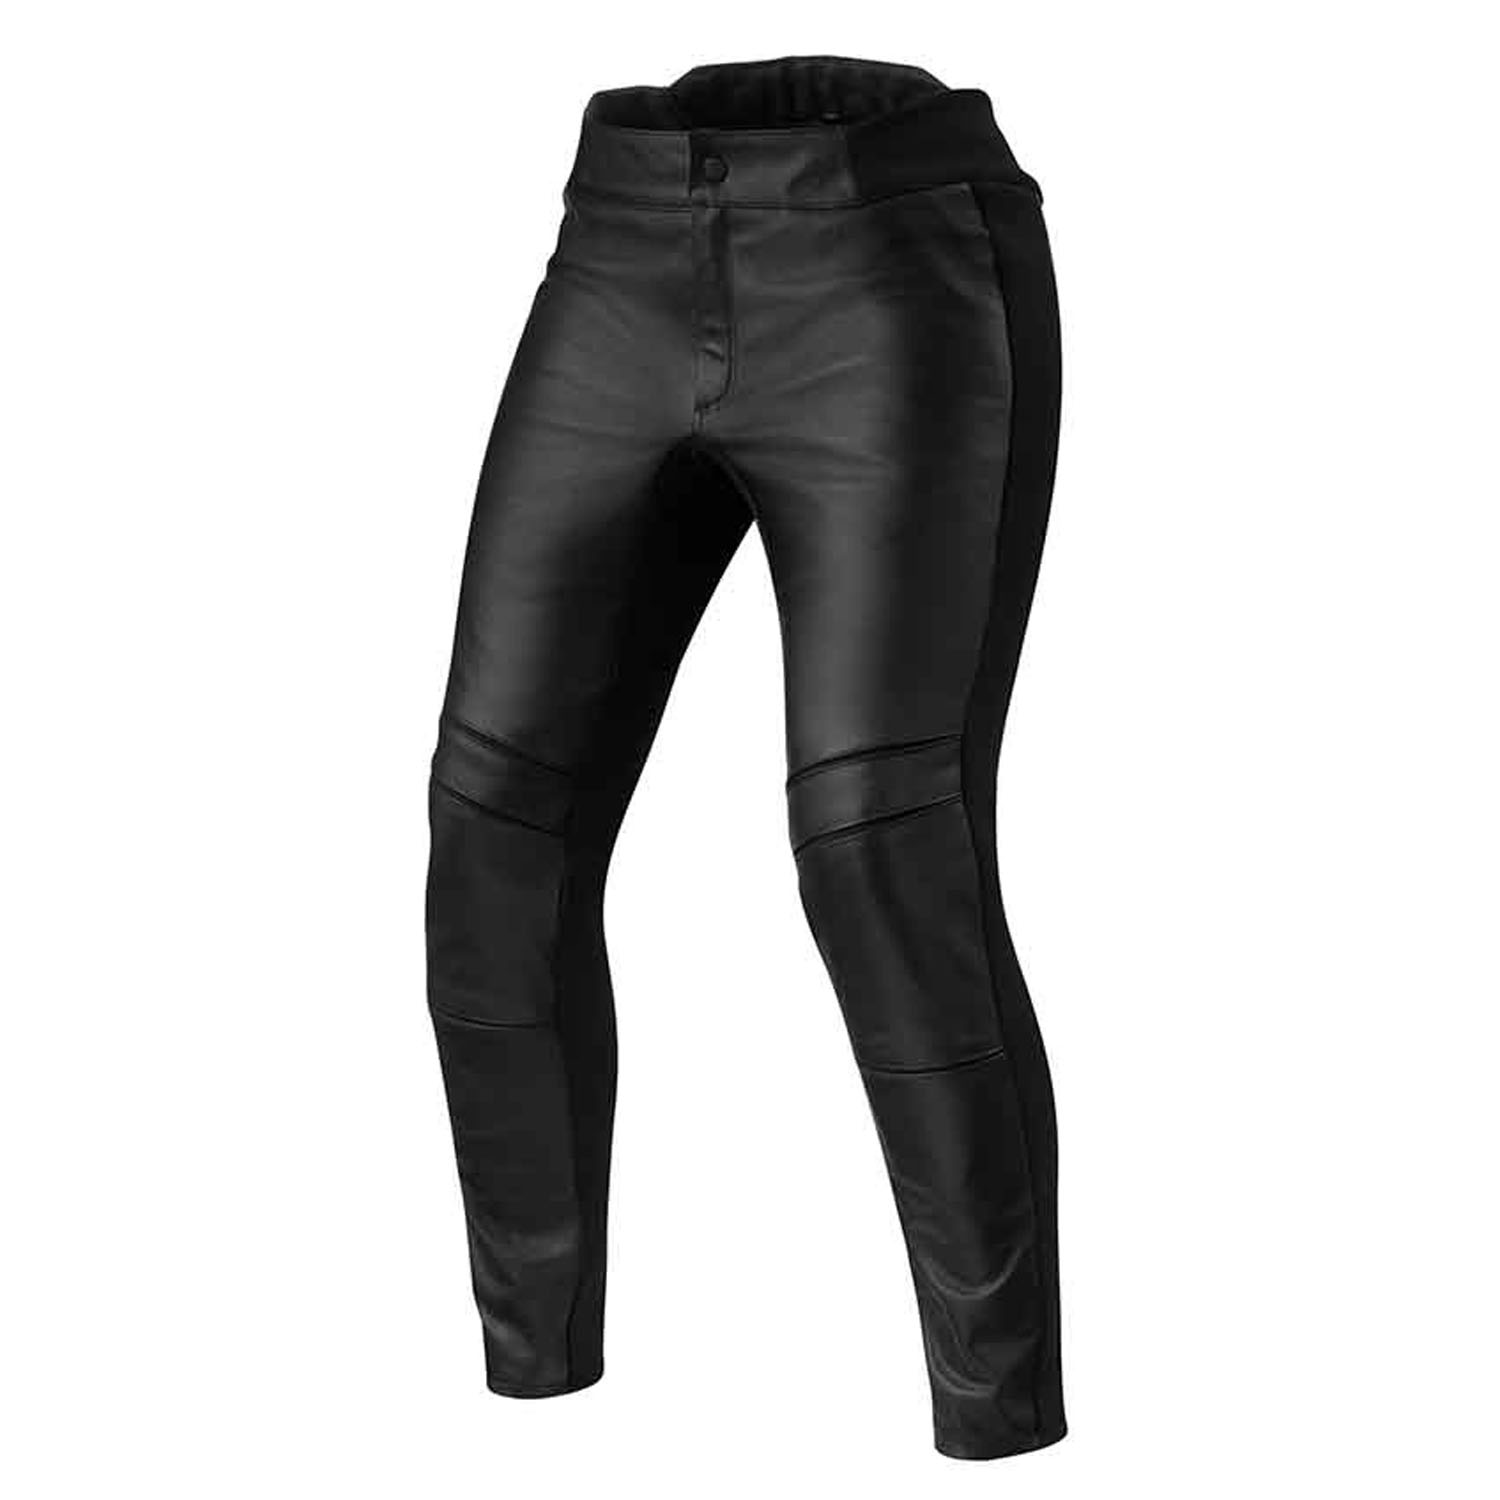 Image of REV'IT! Maci Ladies Black Standard Motorcycle Pants Size 38 EN